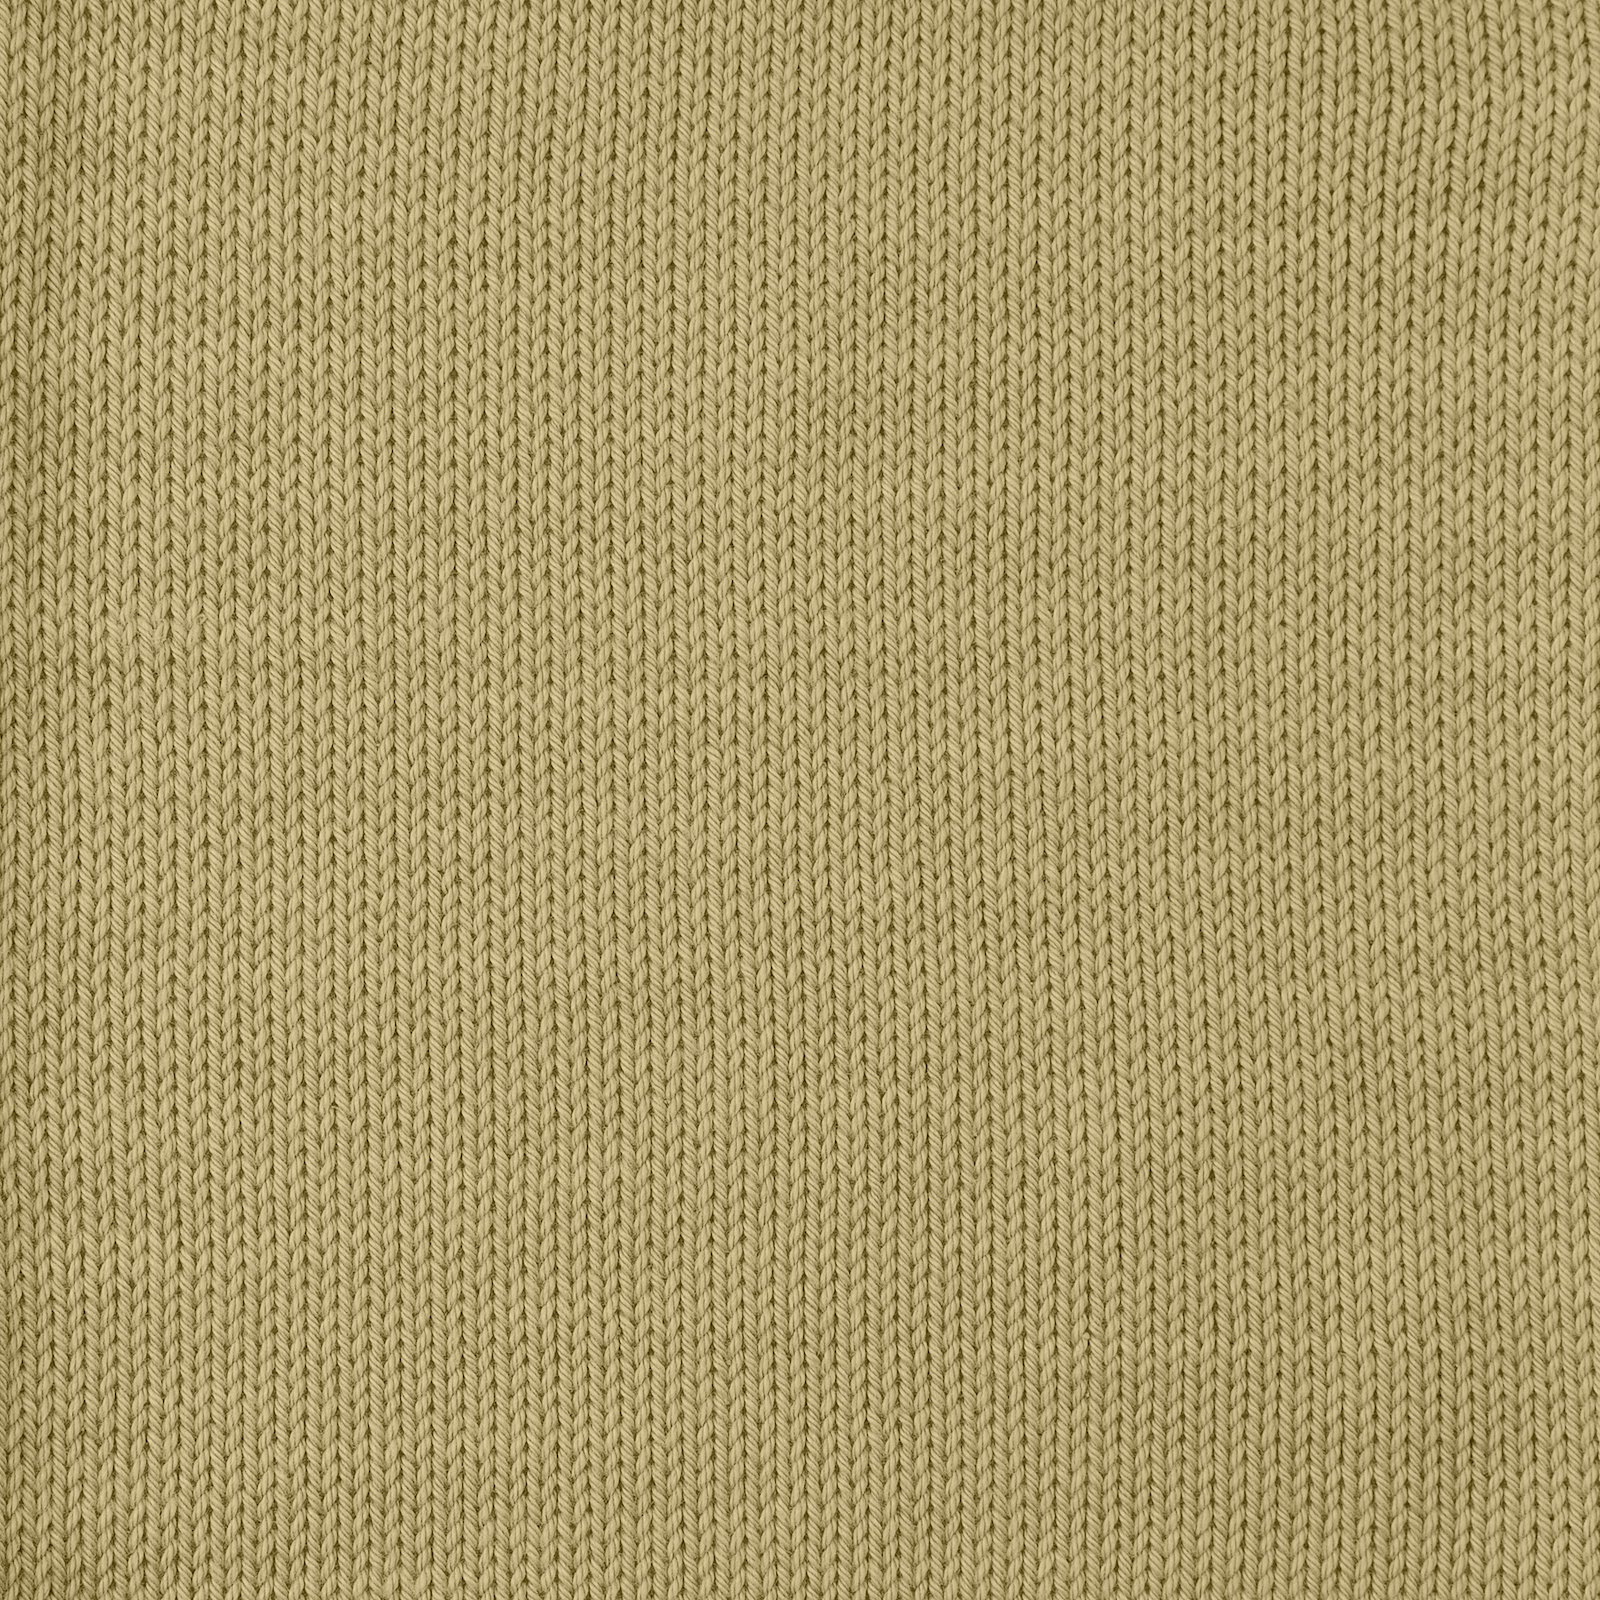 FRAYA, 100% cotton yarn "Colourful", light kaki 90060085_sskit